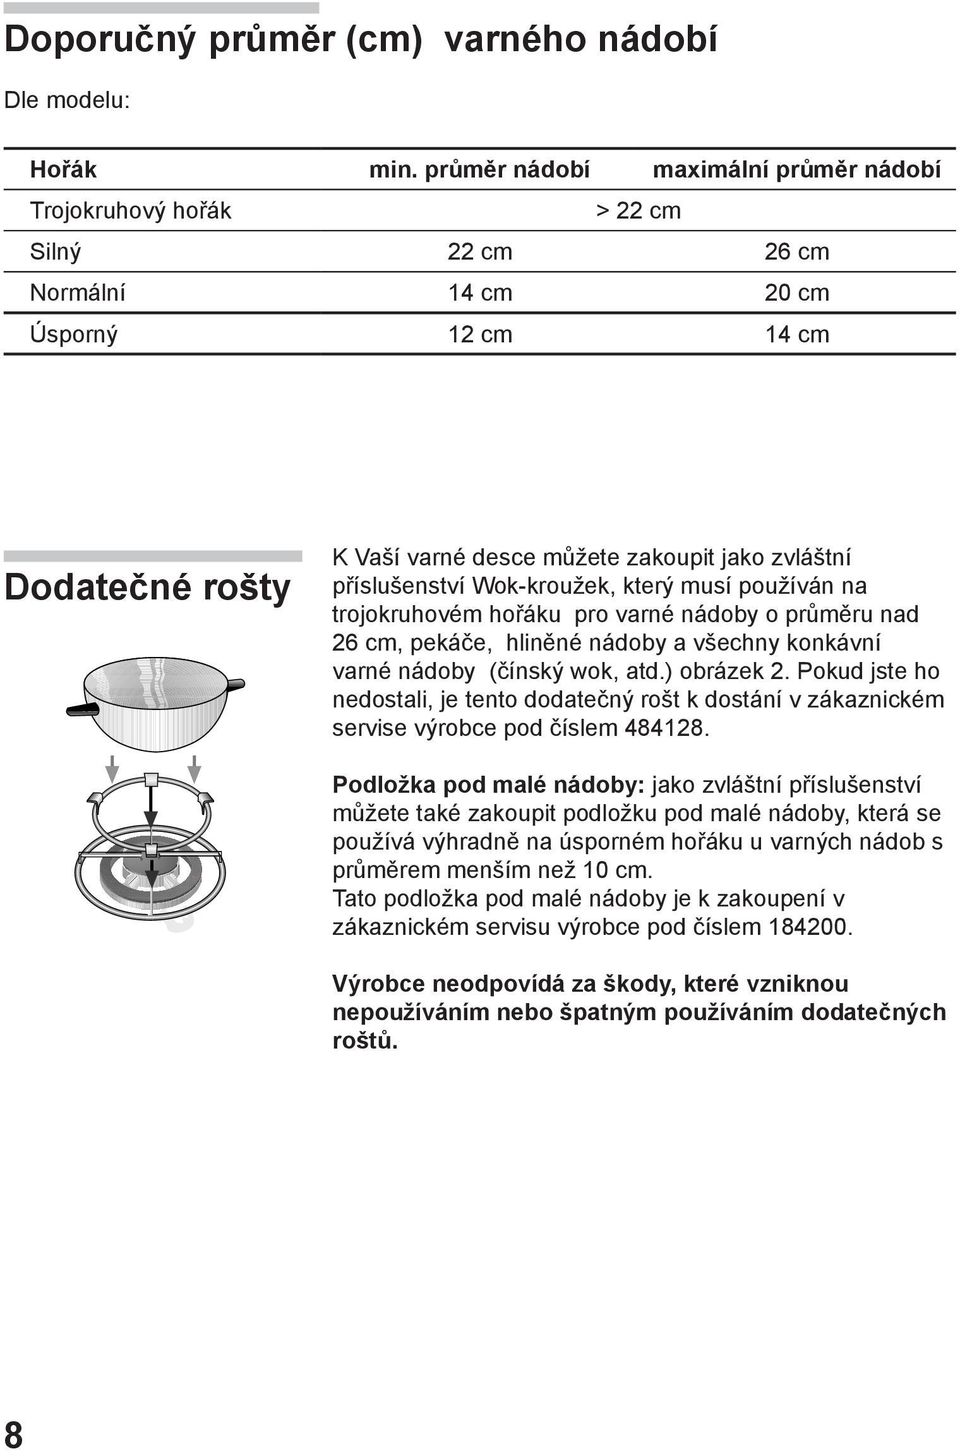 příslušenství Wok-kroužek, který musí používán na trojokruhovém hořáku pro varné nádoby o průměru nad 26 cm, pekáče, hliněné nádoby a všechny konkávní varné nádoby (čínský wok, atd.) obrázek 2.